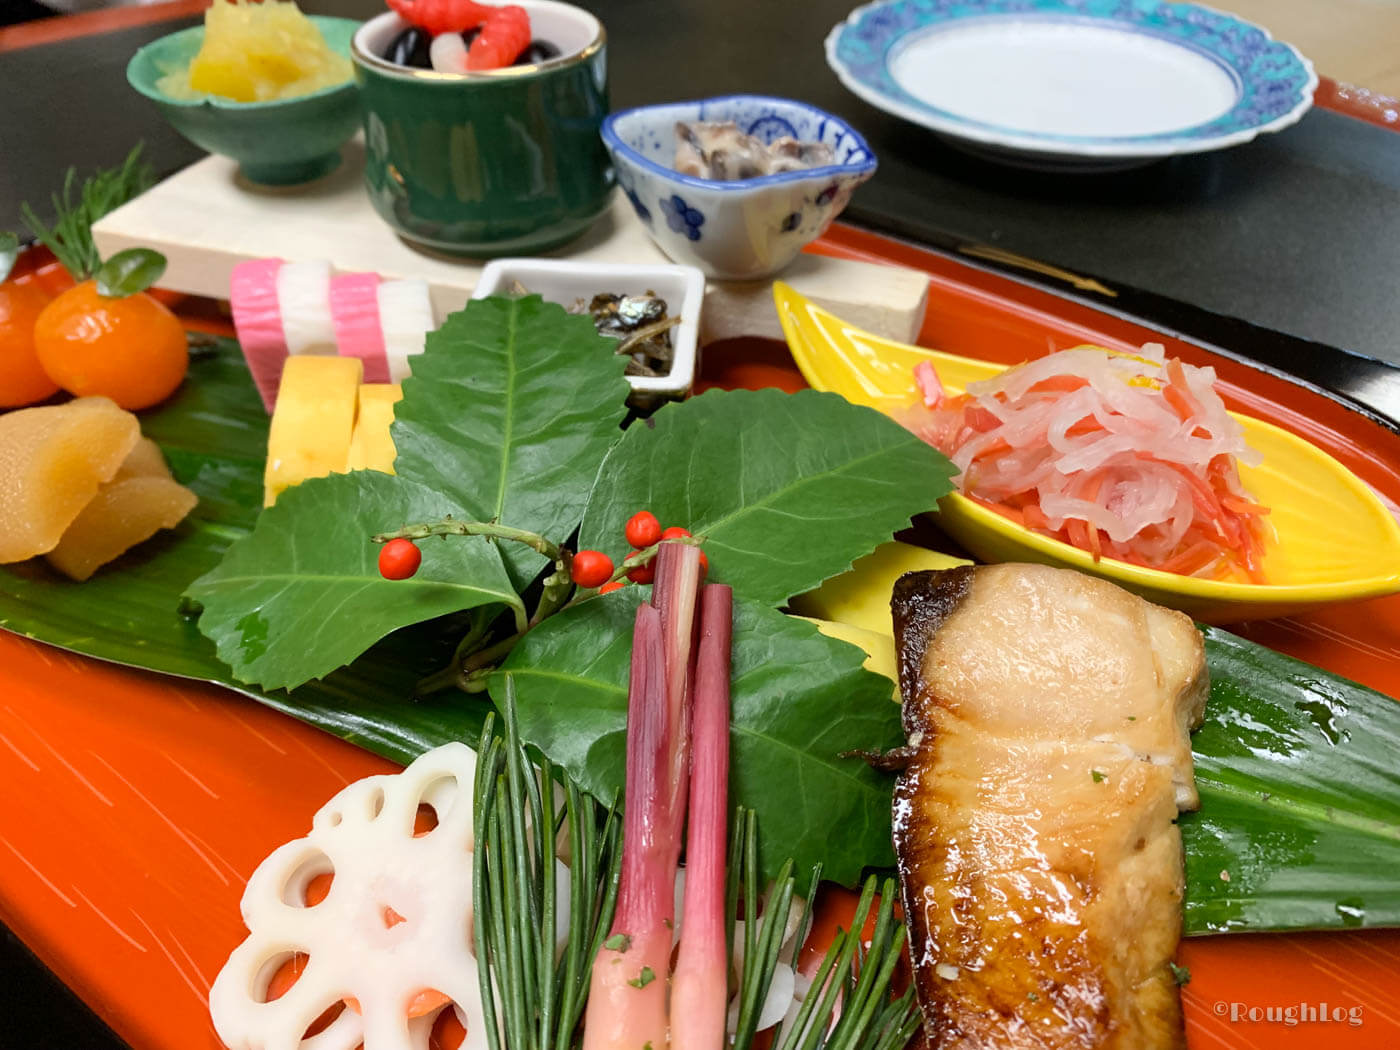 三平荘の料理は部屋食で。地元の食材を用いたオリジナルの会席料理